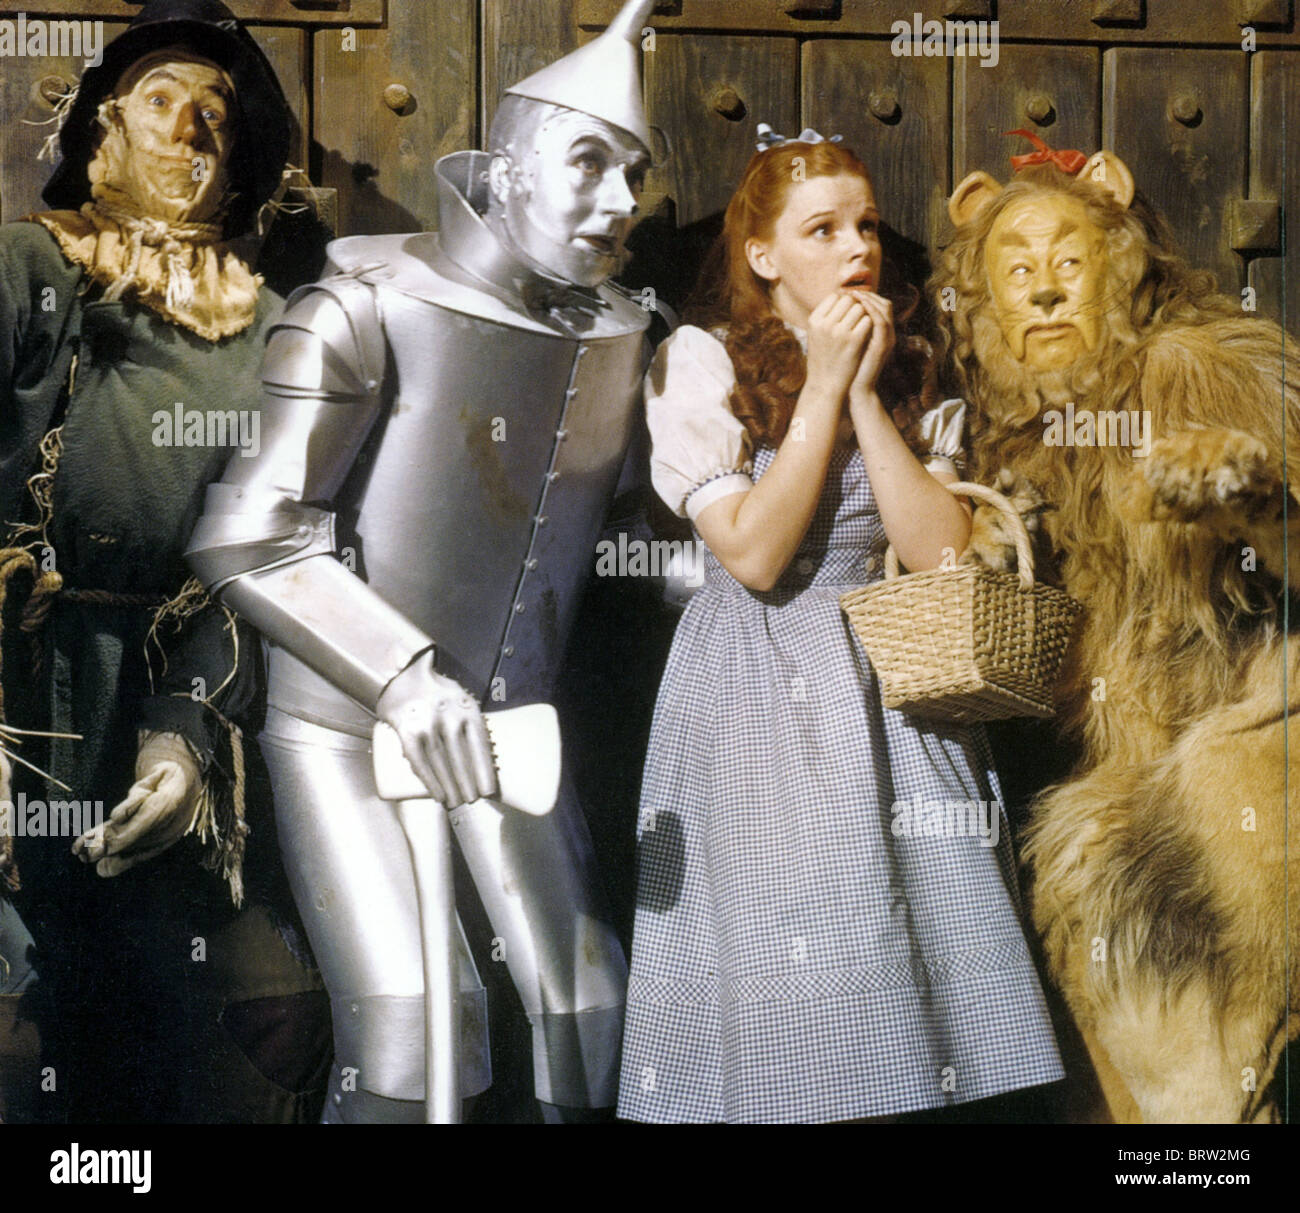 DER Zauberer von OZ 1939 MGM-Film mit von links Ray Bolger, Jack Haley, Judy Garland und Bert Lahr Stockfoto